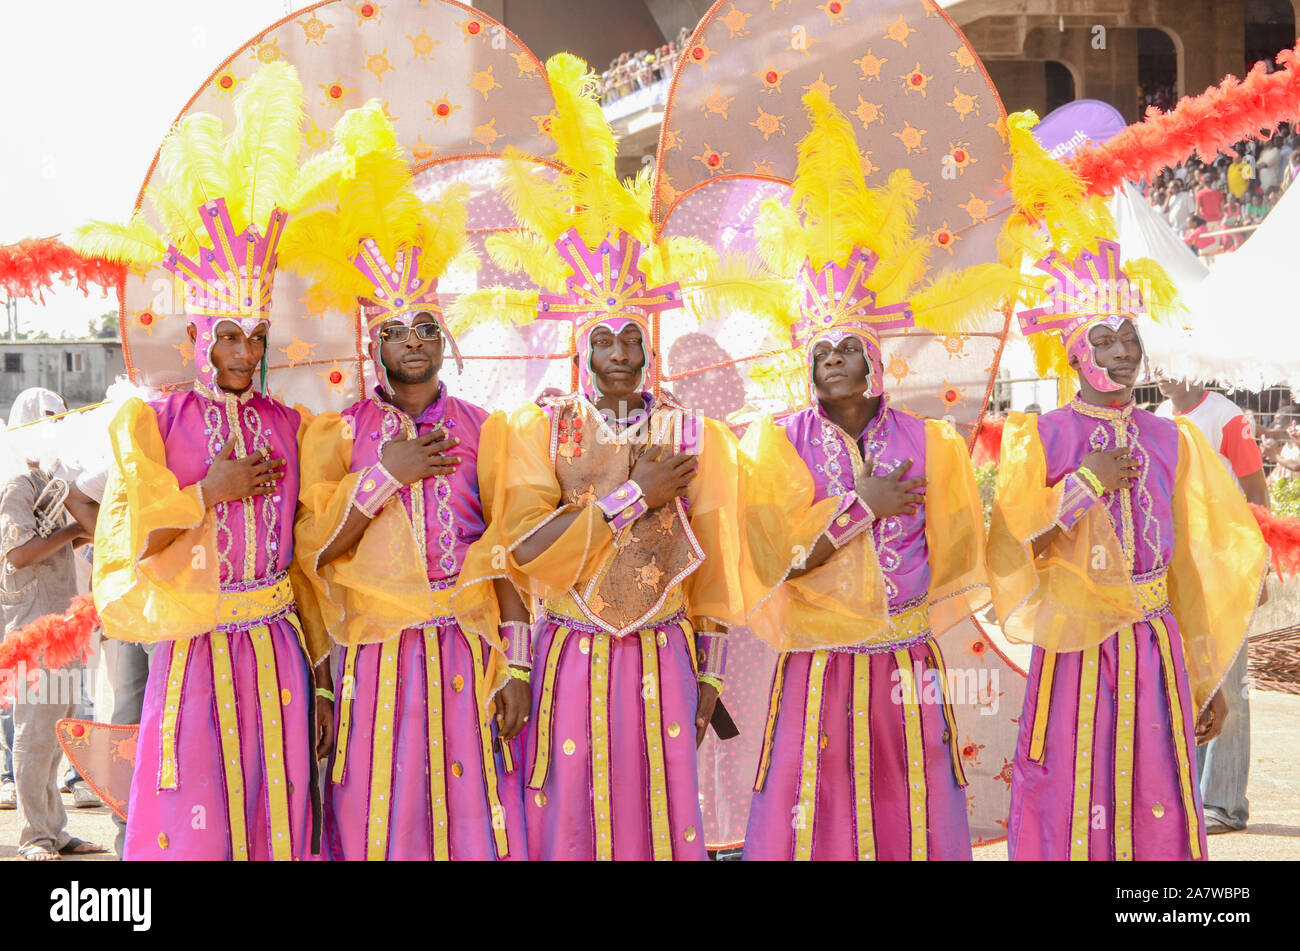 Les jeunes hommes en costume coloré se sont fait un souvenir de l'hymne national nigérian au carnaval de Lagos. Banque D'Images